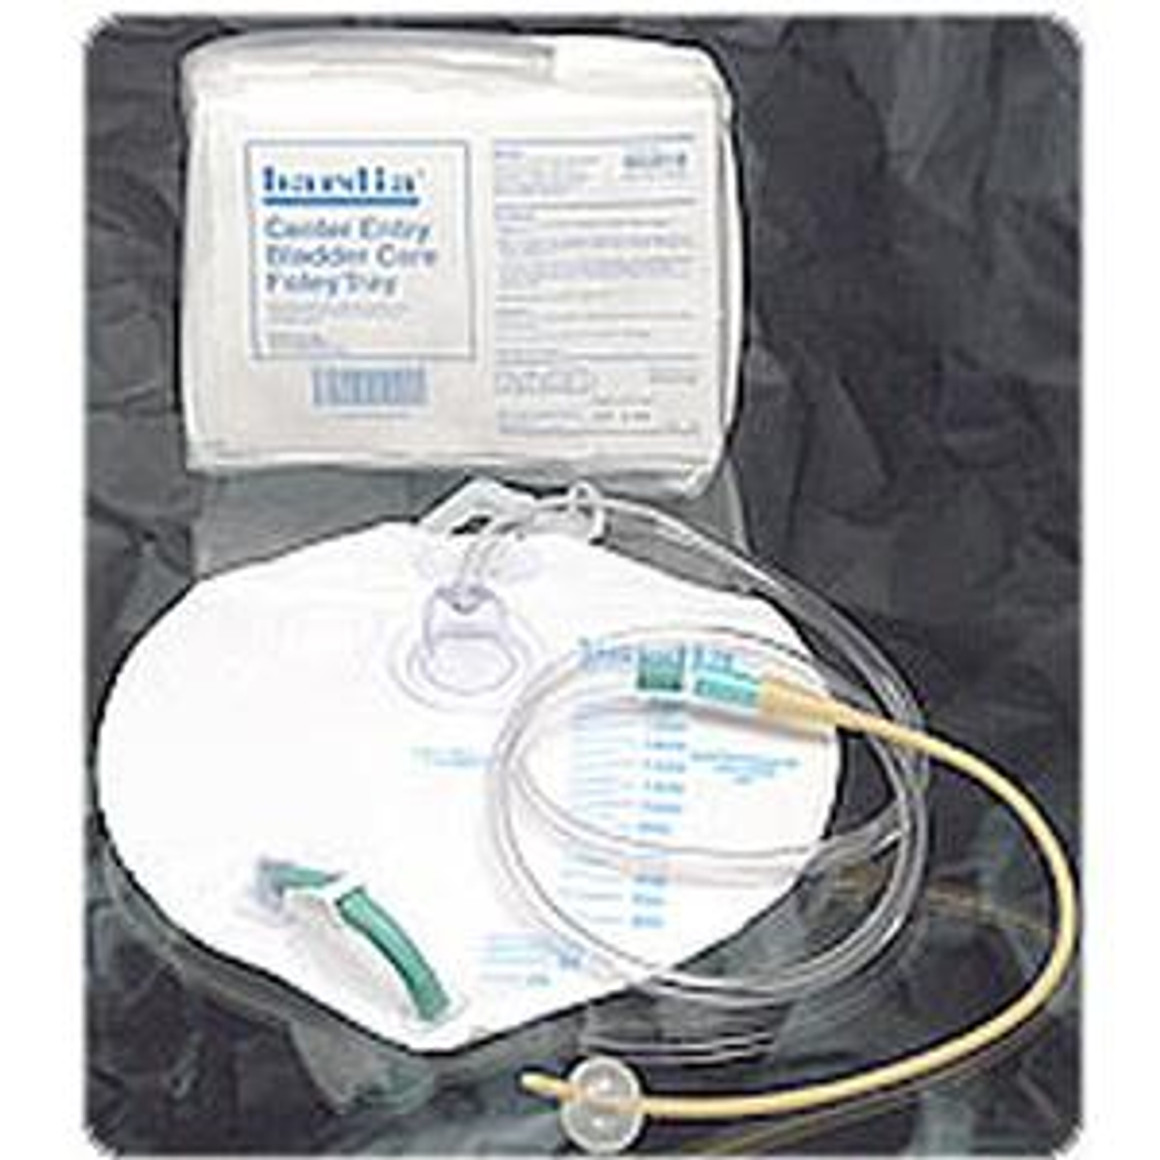 Bardia® Closed System Foley Tray with 18Fr Silicone Elastomer Coated Foley Catheter, 2000mL Urine Drainage Bag, 10cc Prefilled Syringe, 2 Latex-Free Exam Gloves, PVP Swab Sticks